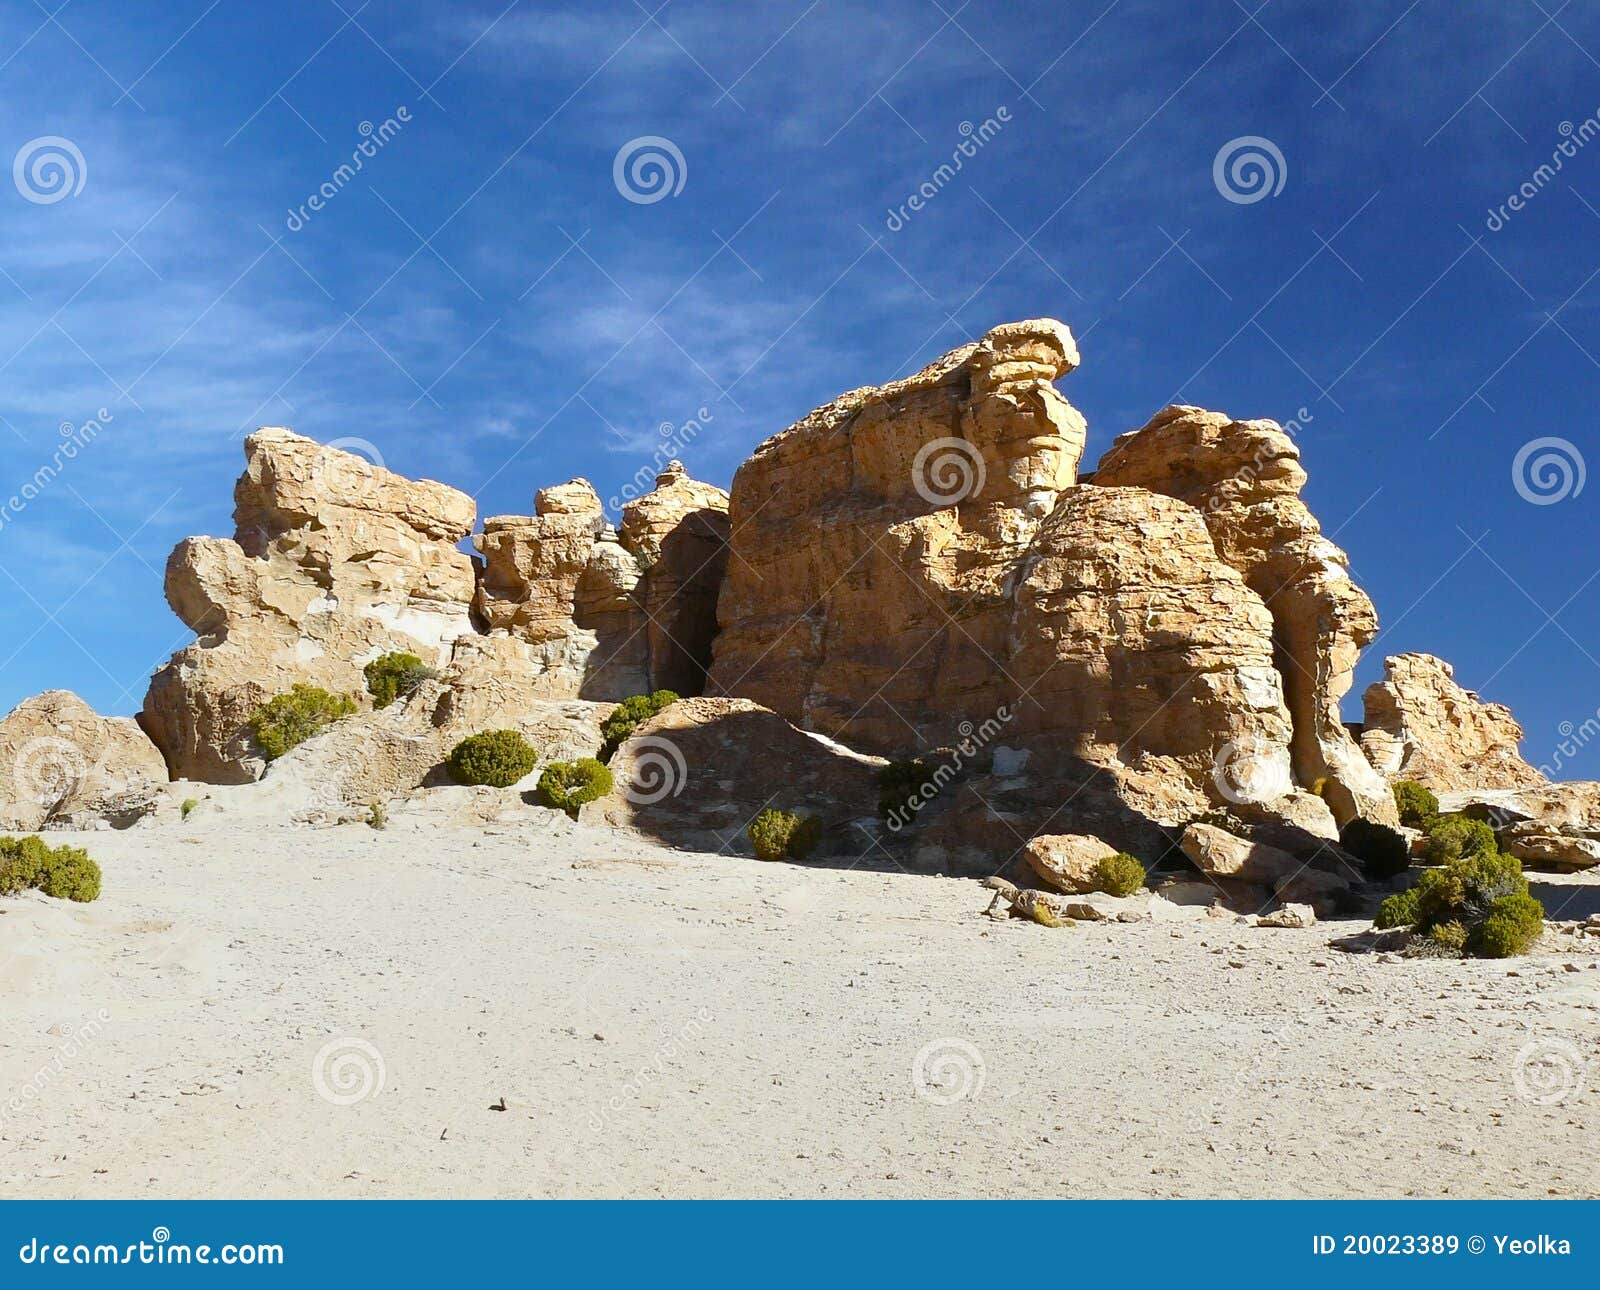 valle de rocas, altiplano, bolivia